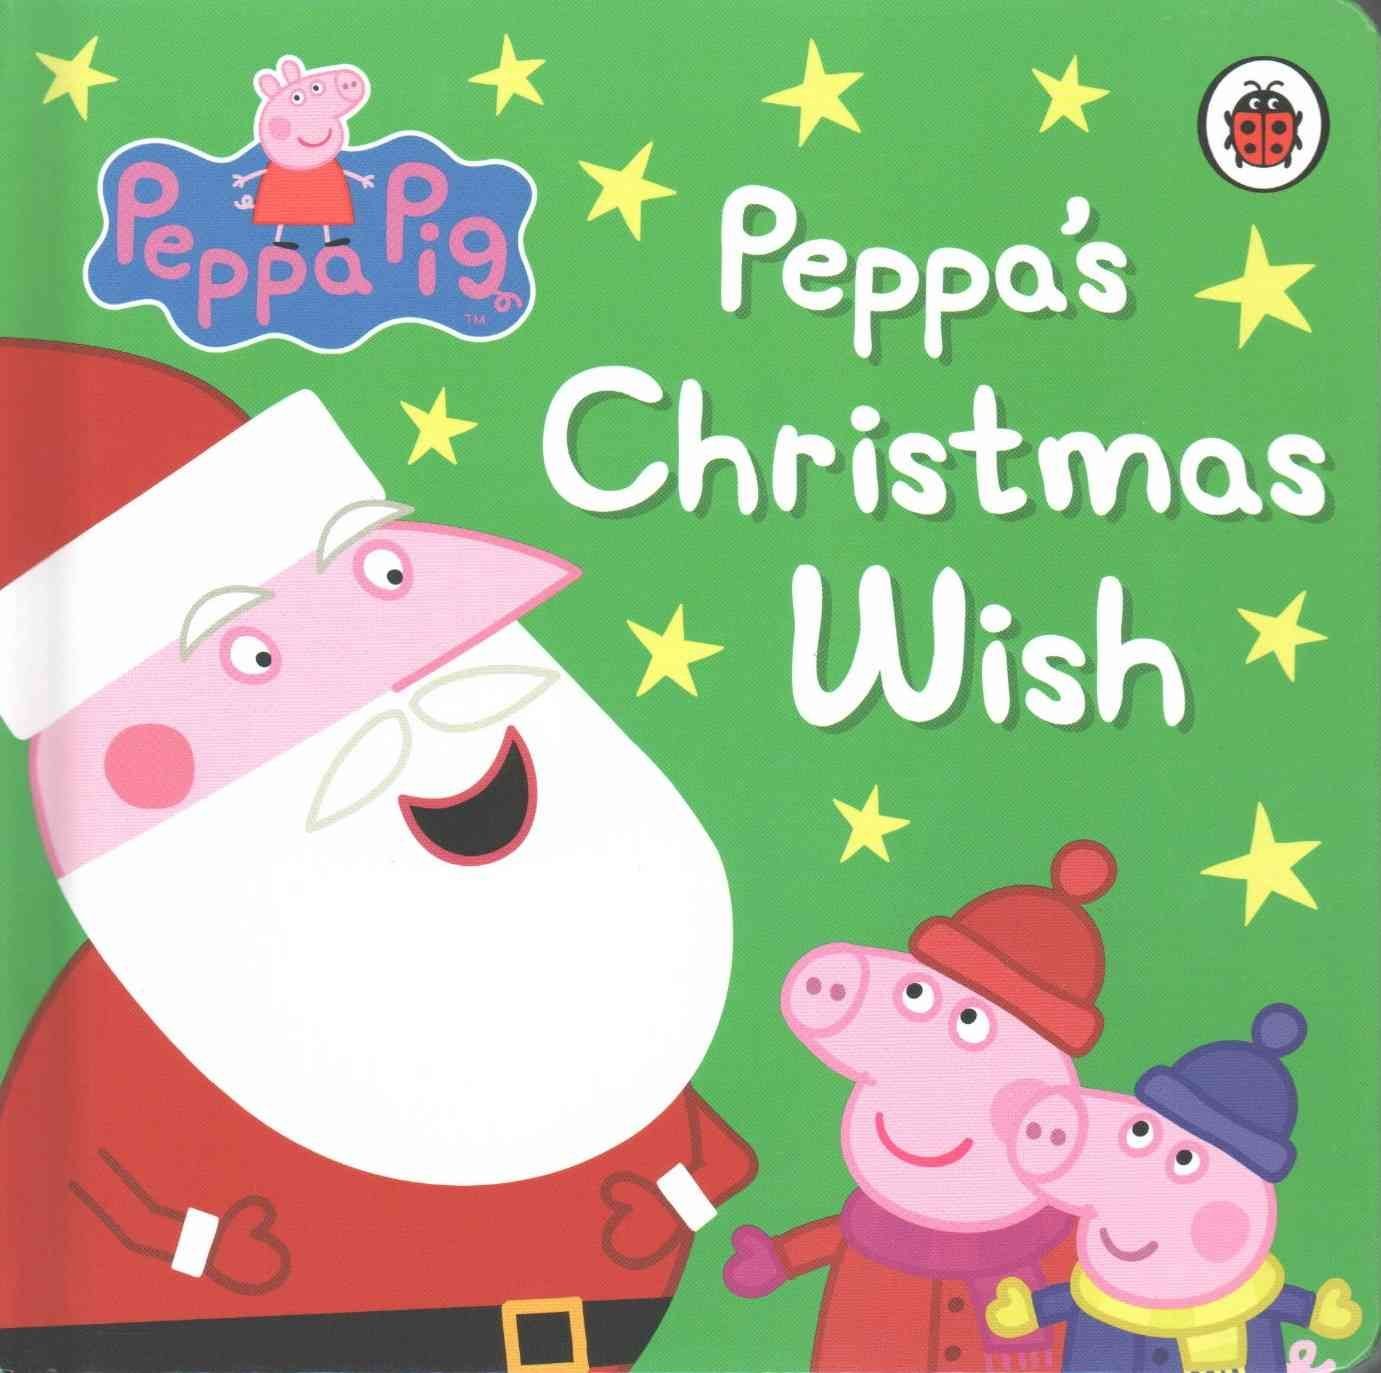 https://wordery.com/jackets/73aad882/peppa-pig-peppas-christmas-wish-peppa-pig-9780718197193.jpg